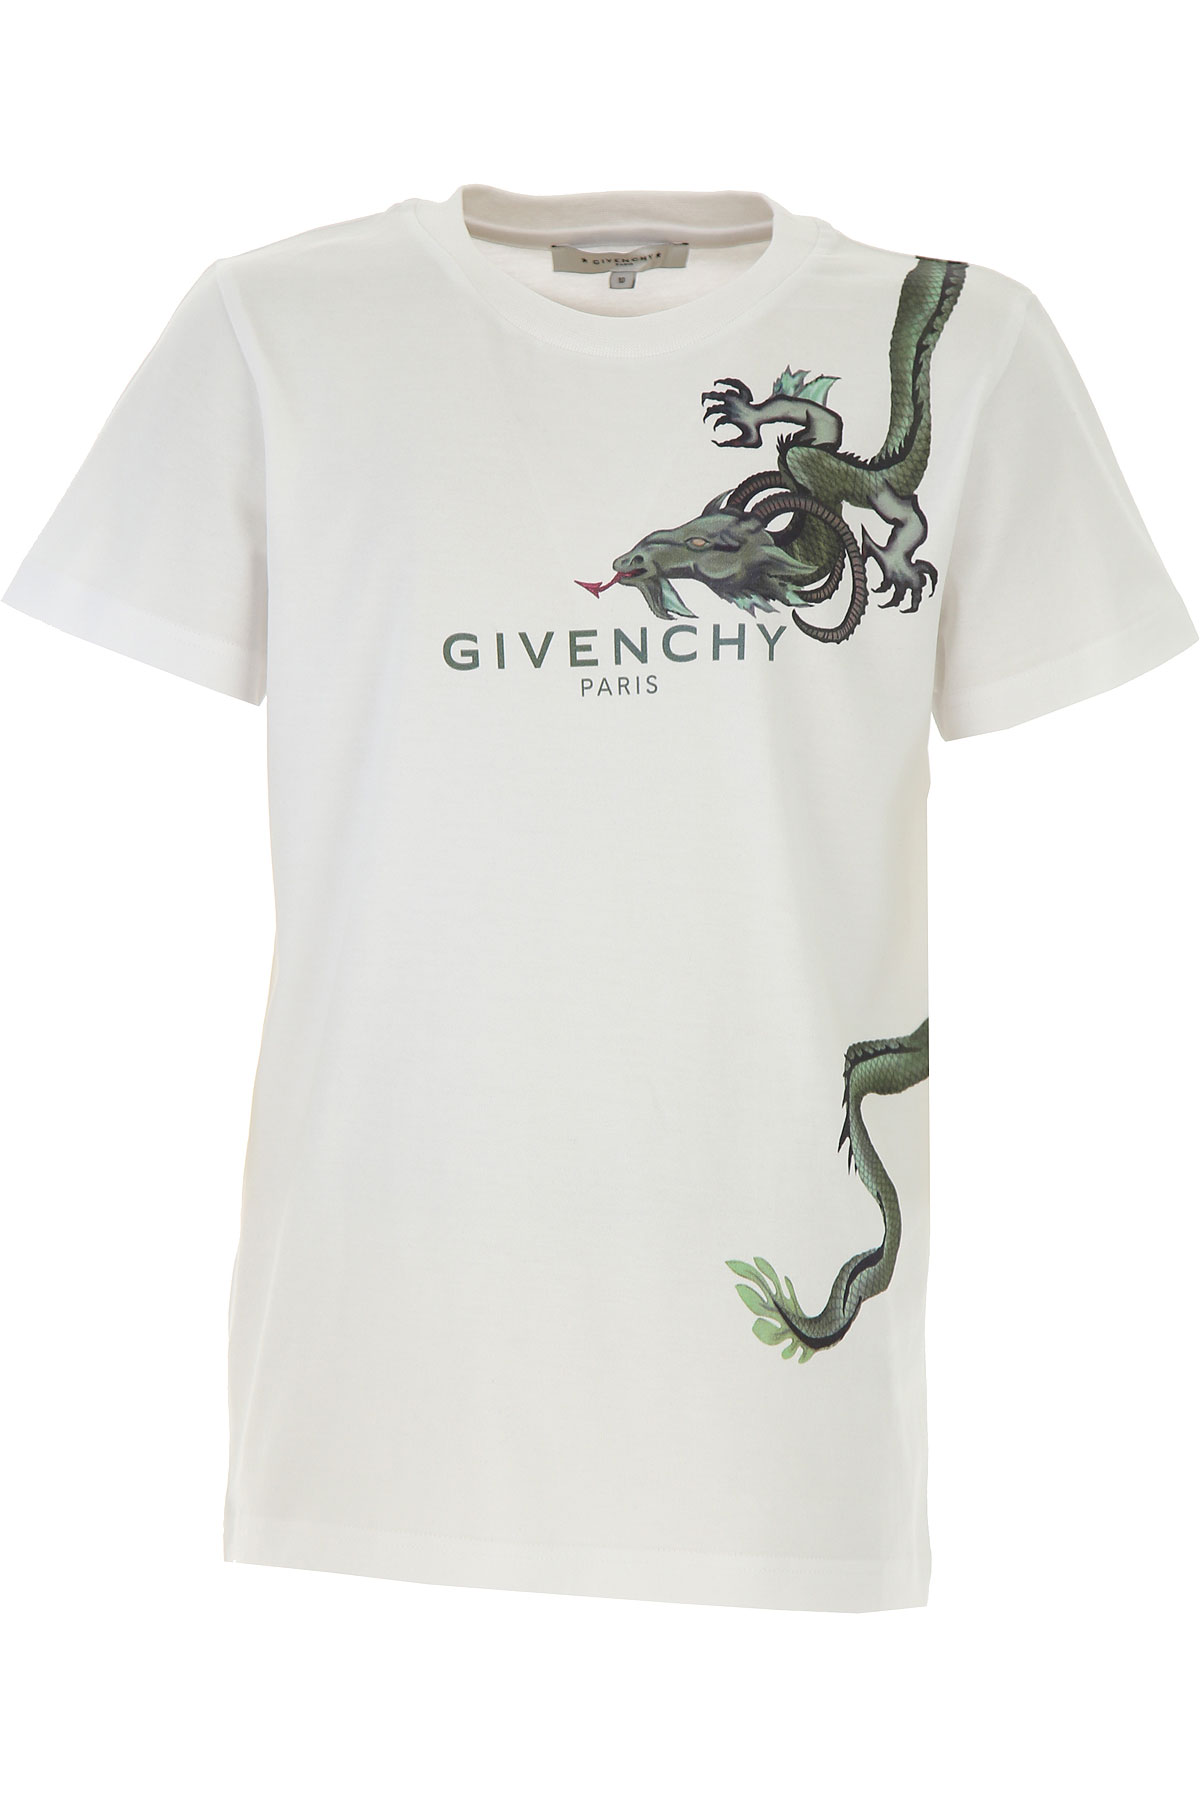 Givenchy Kinder T-Shirt für Jungen Günstig im Sale, Weiss, Baumwolle, 2017, 10Y 4Y 6Y 8Y